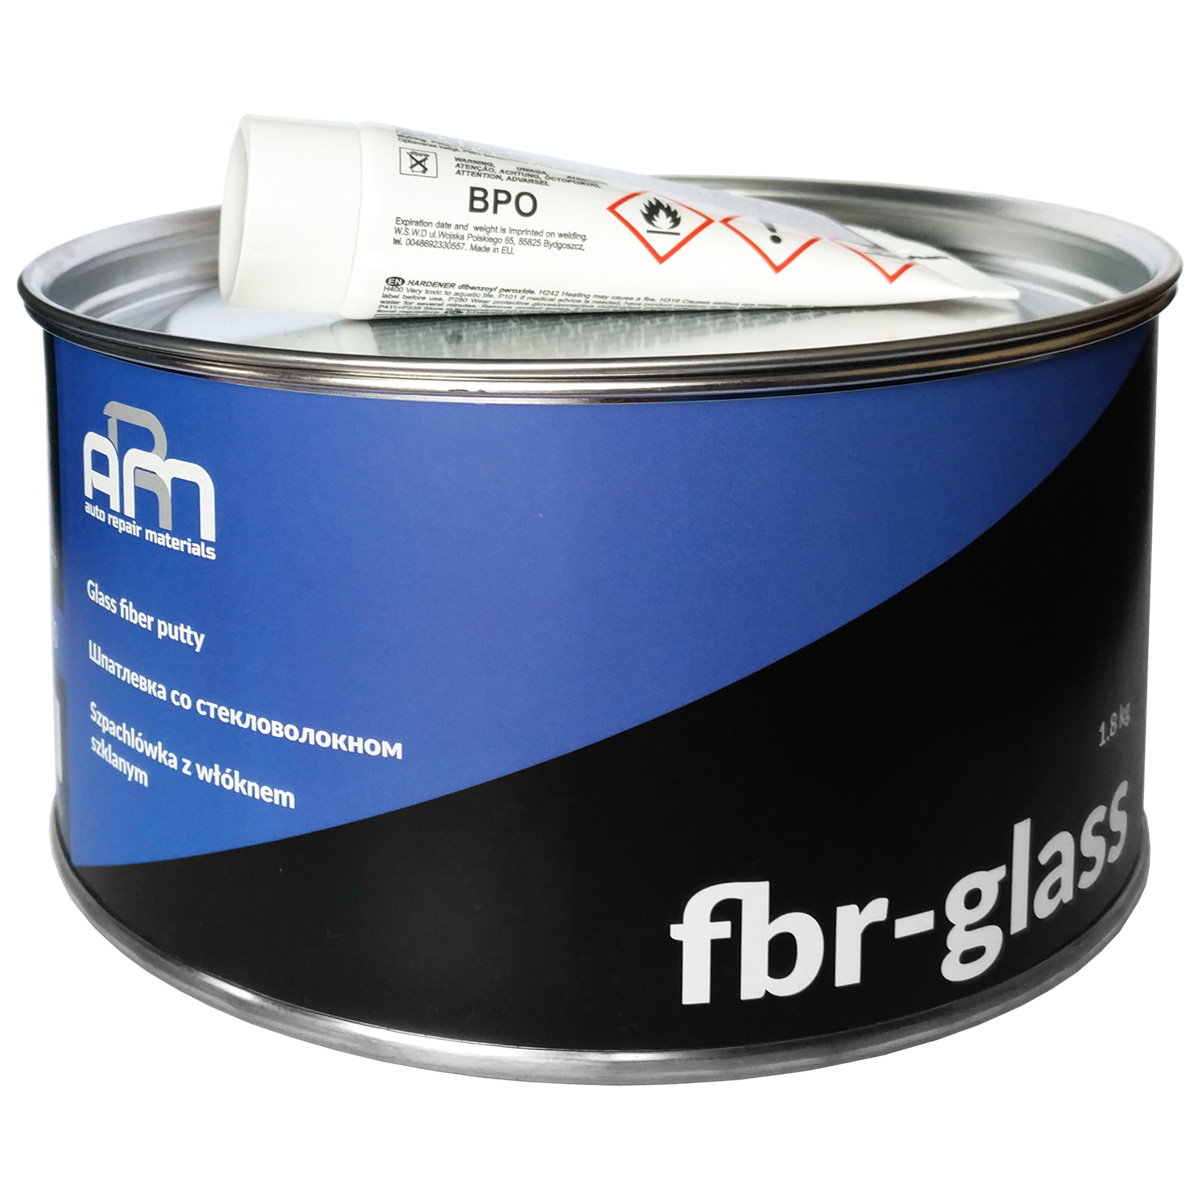 Шпатлевка ARM FBR-CLASS со стекловолокном голубая 1,8кг 